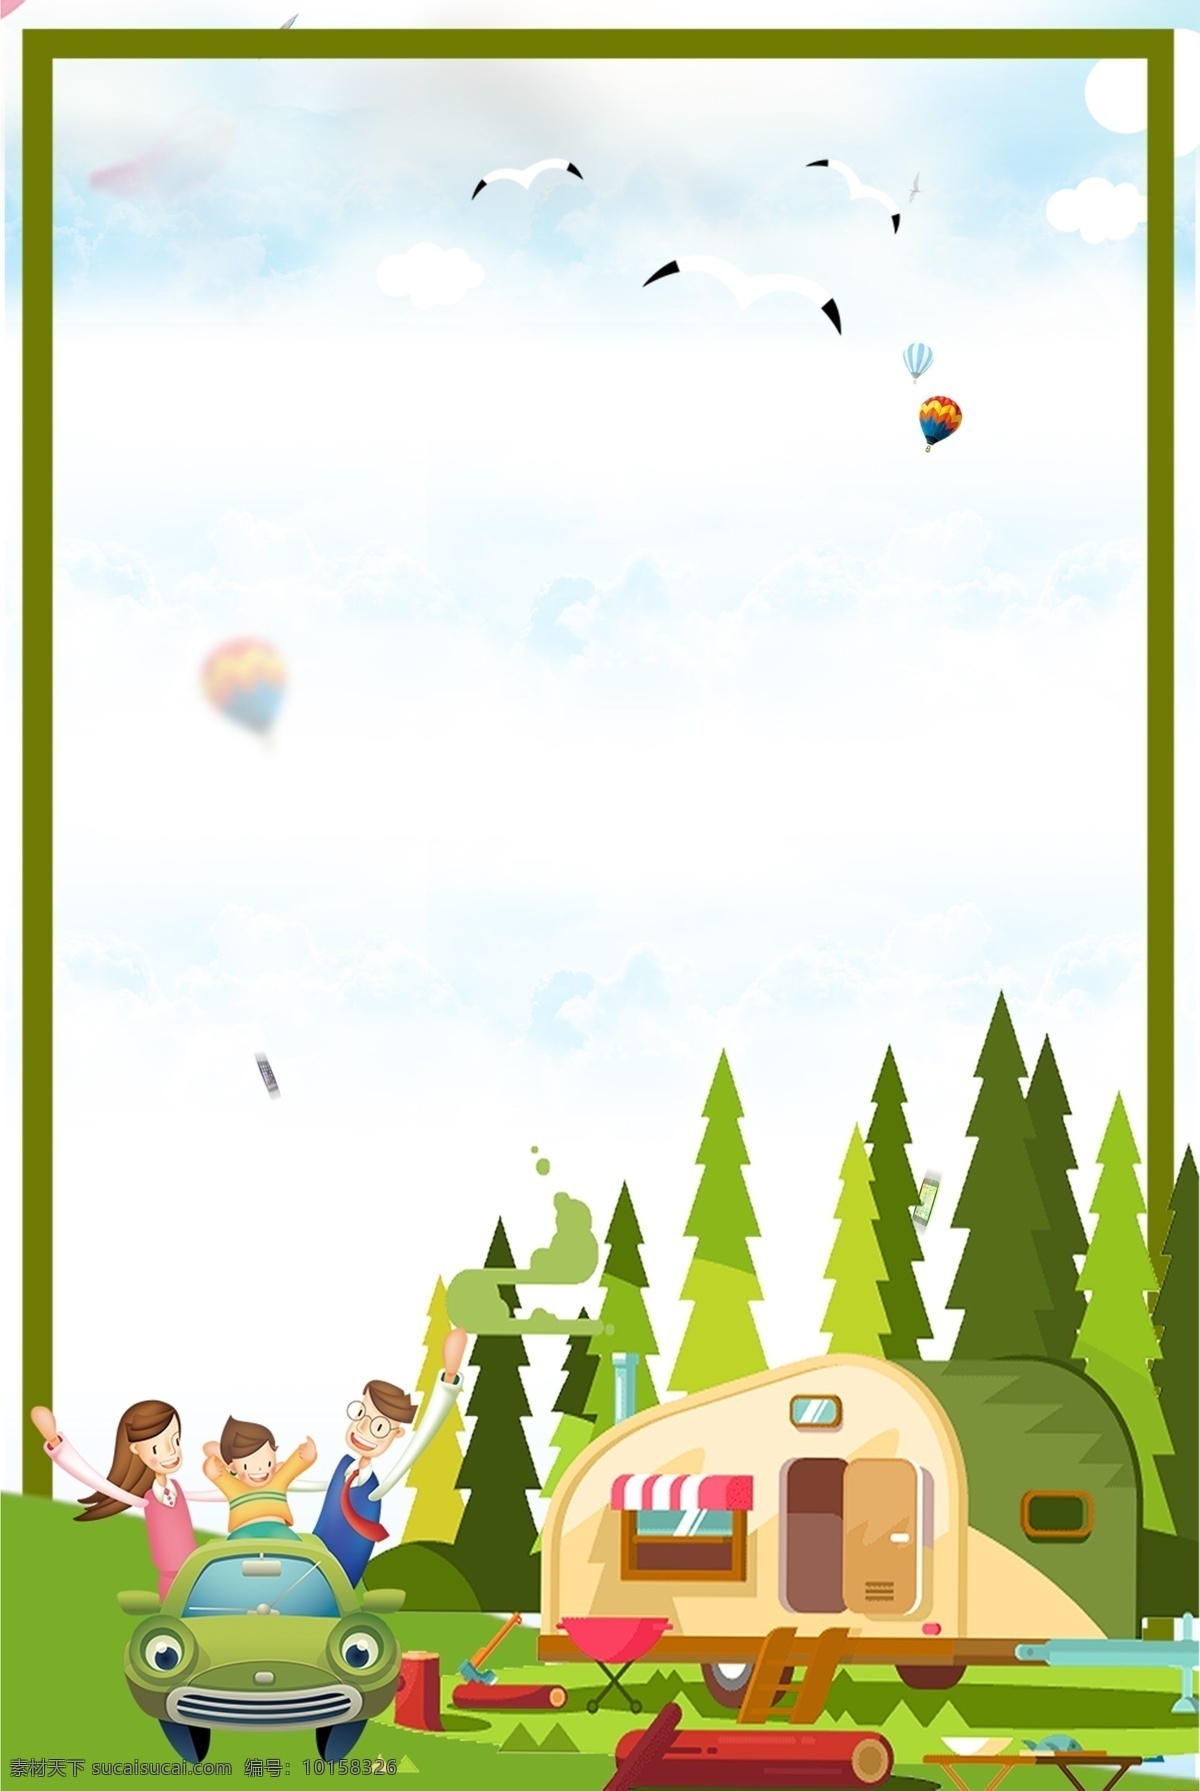 暑期 郊游 简约 卡通 海报 背景 图 边框 绿色 人物 车辆 气球 树木 房屋